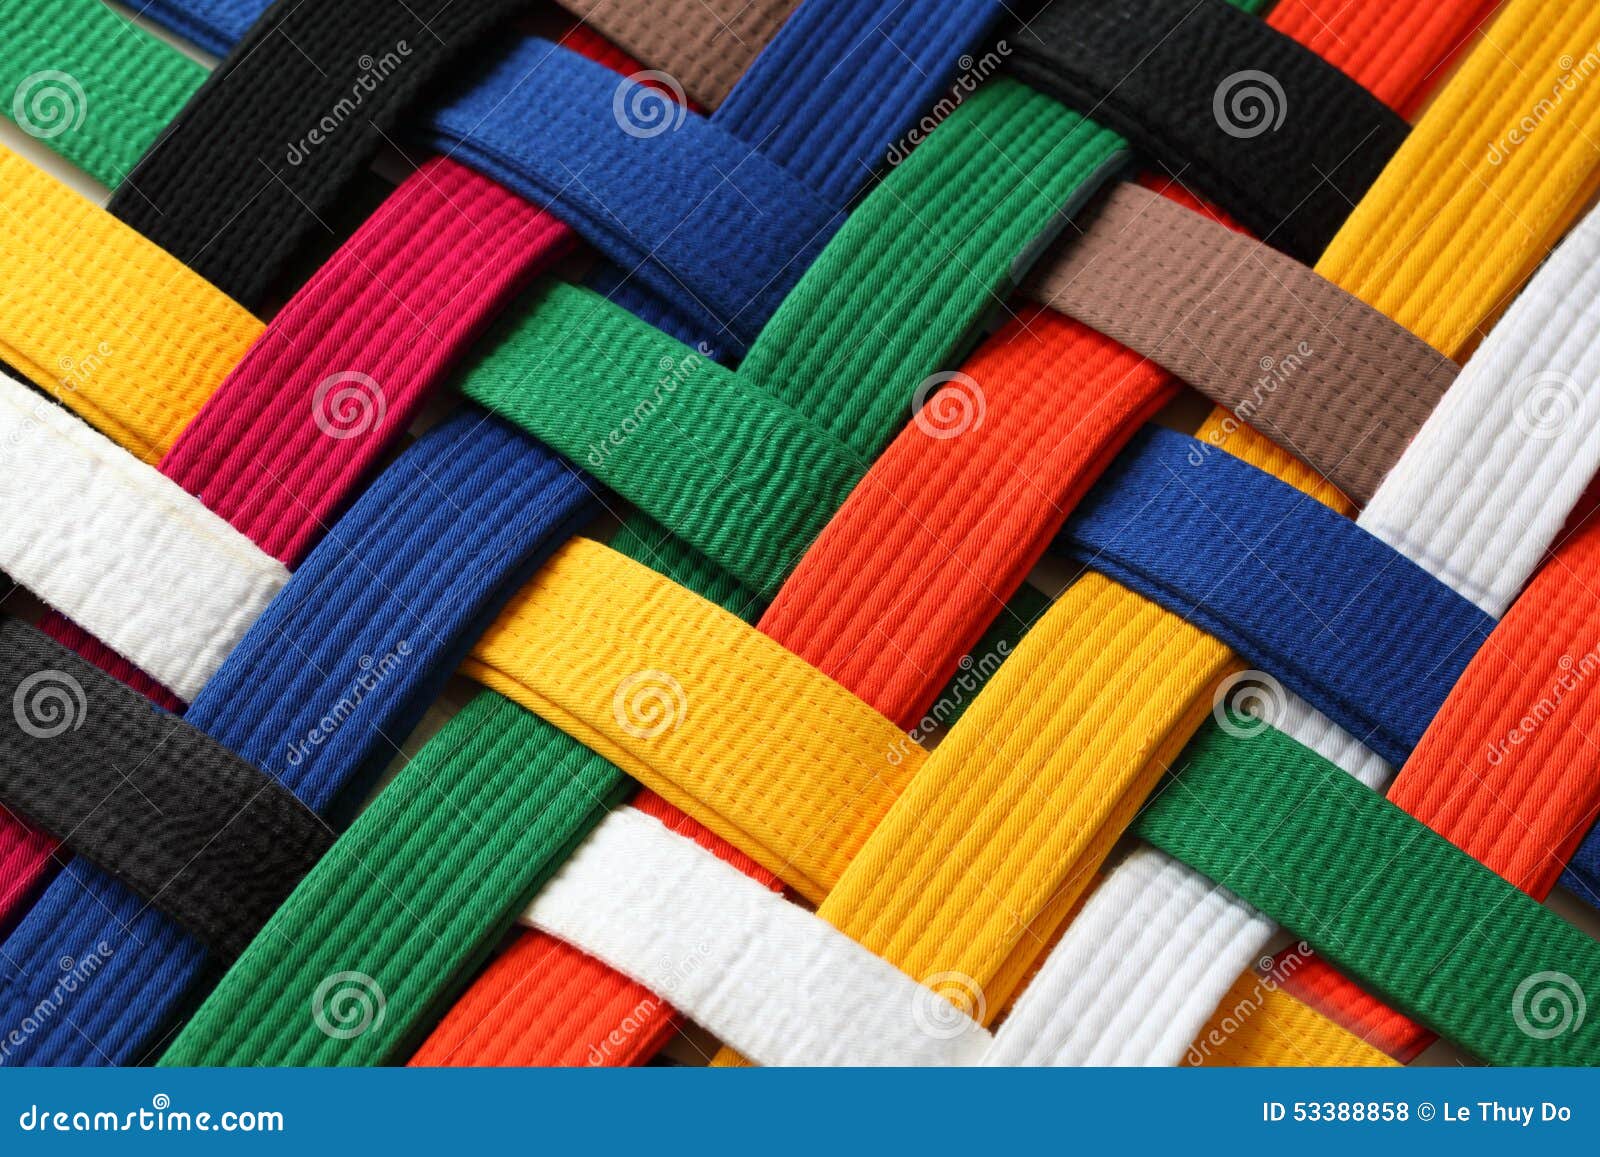 martial arts belts